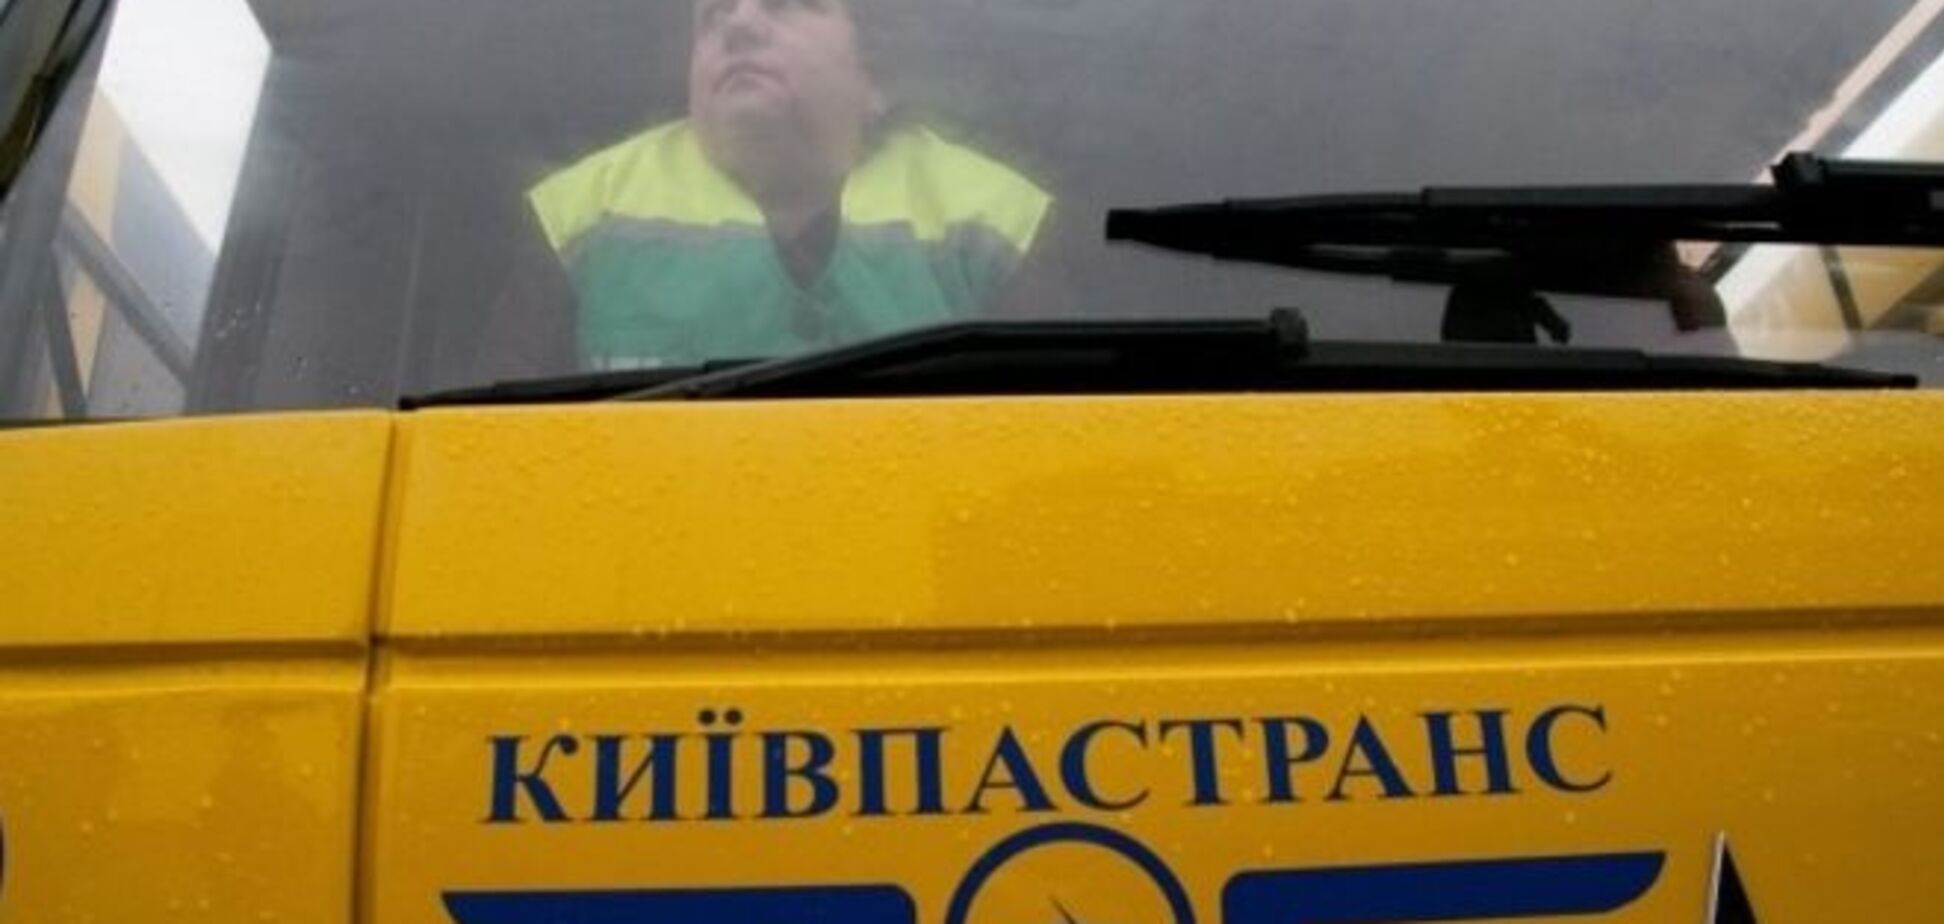 'Киевпасстранс' чистит свои ряды: уволено 450 человек